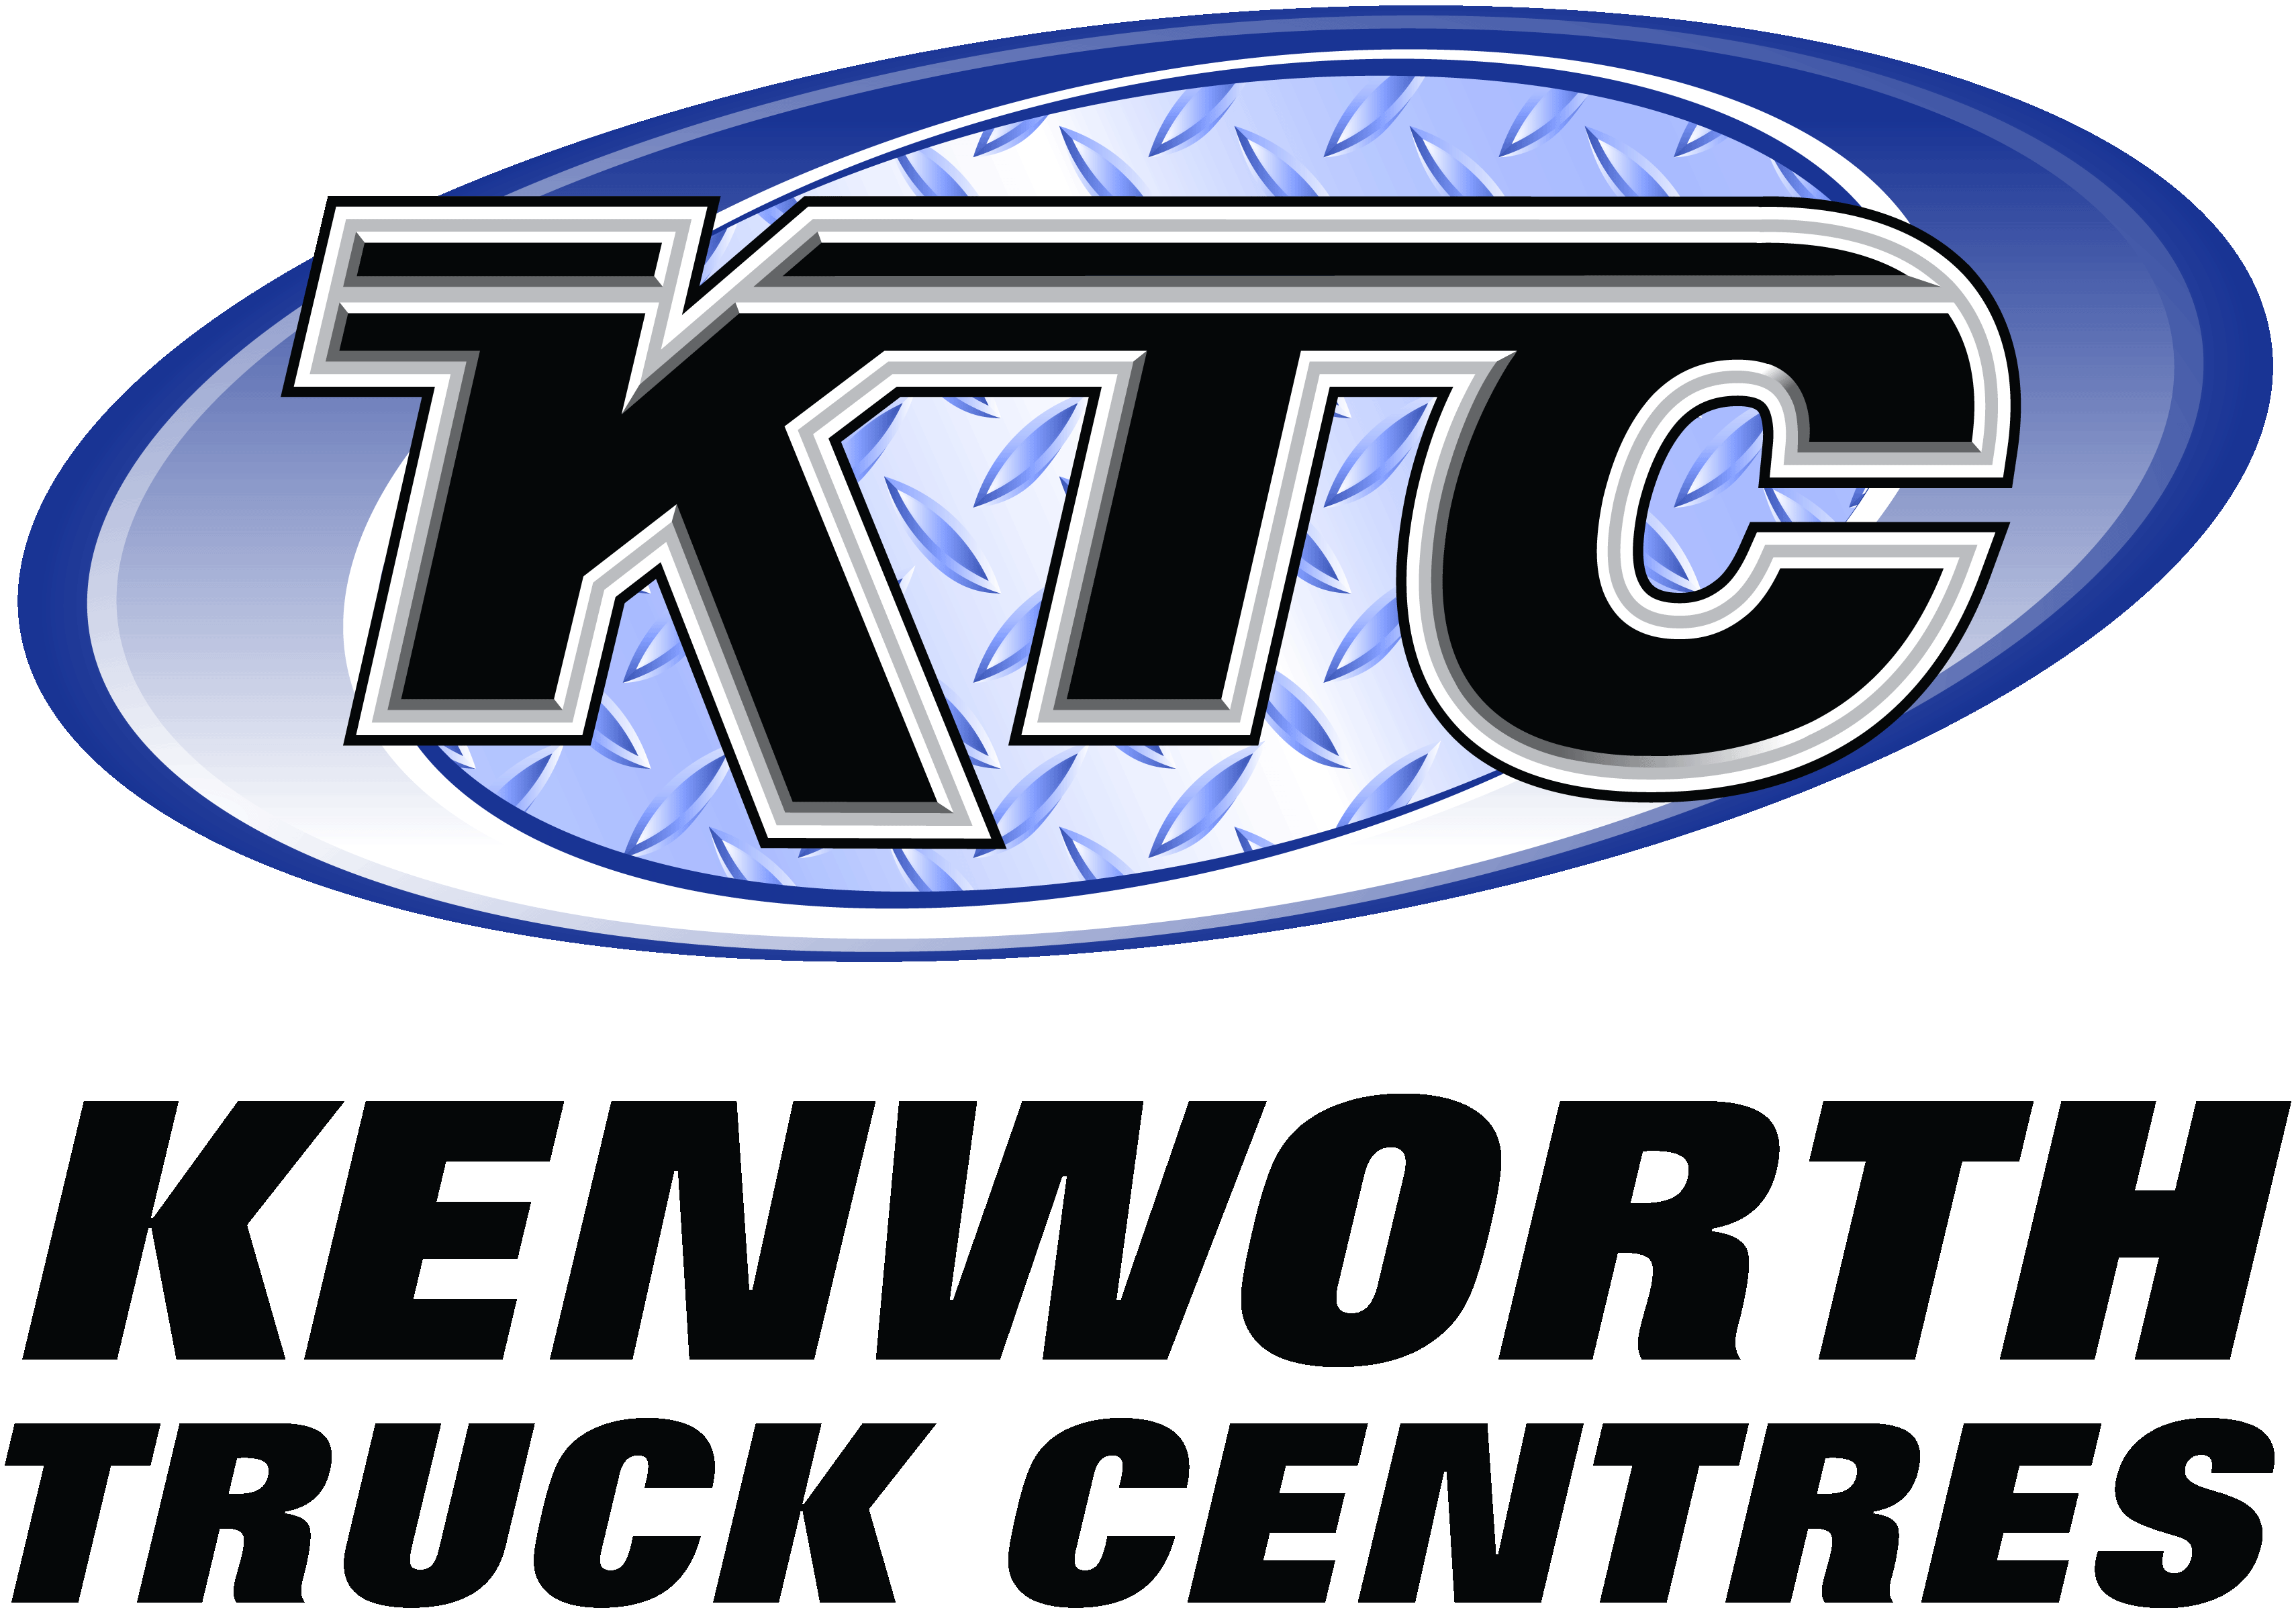 Kenworth Truck Centres